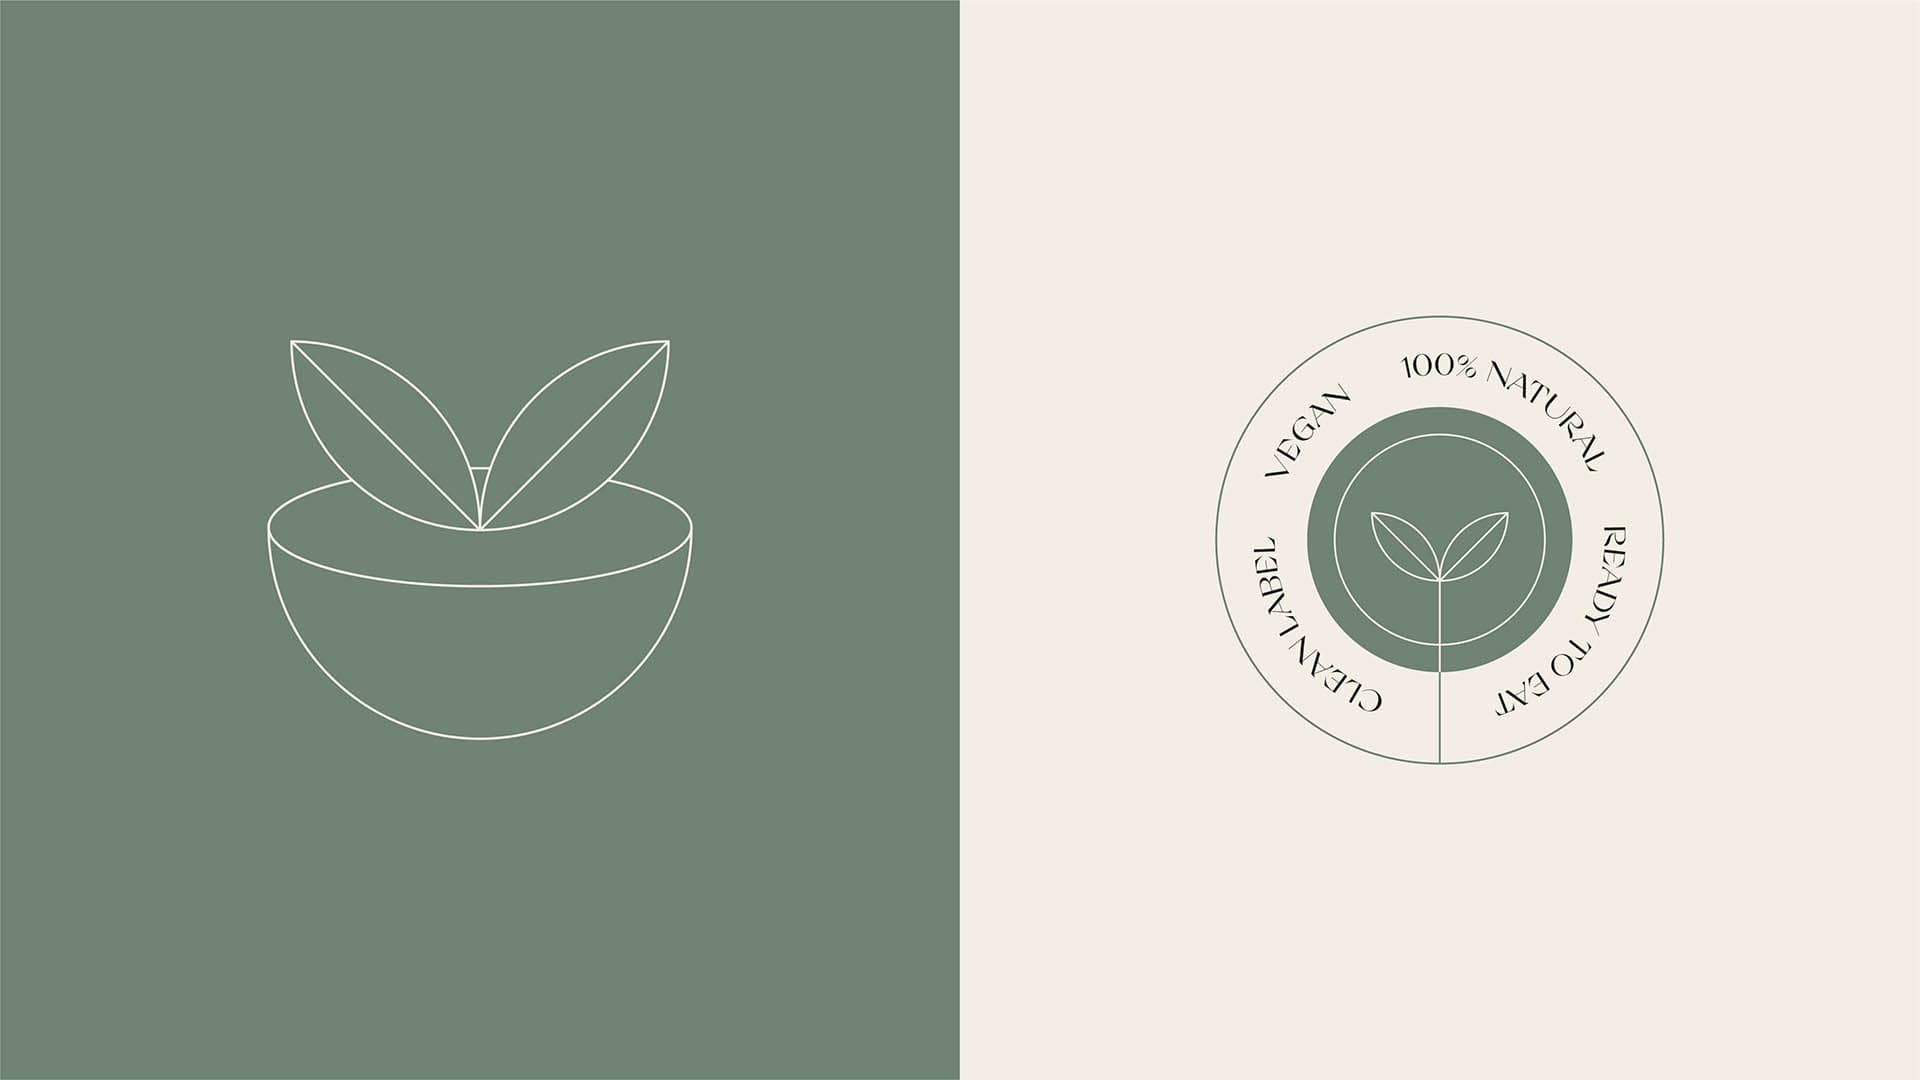 Diseño de identidad y packaging para Coco Vegan, marca de productos valenciana veganos y listos para comer.